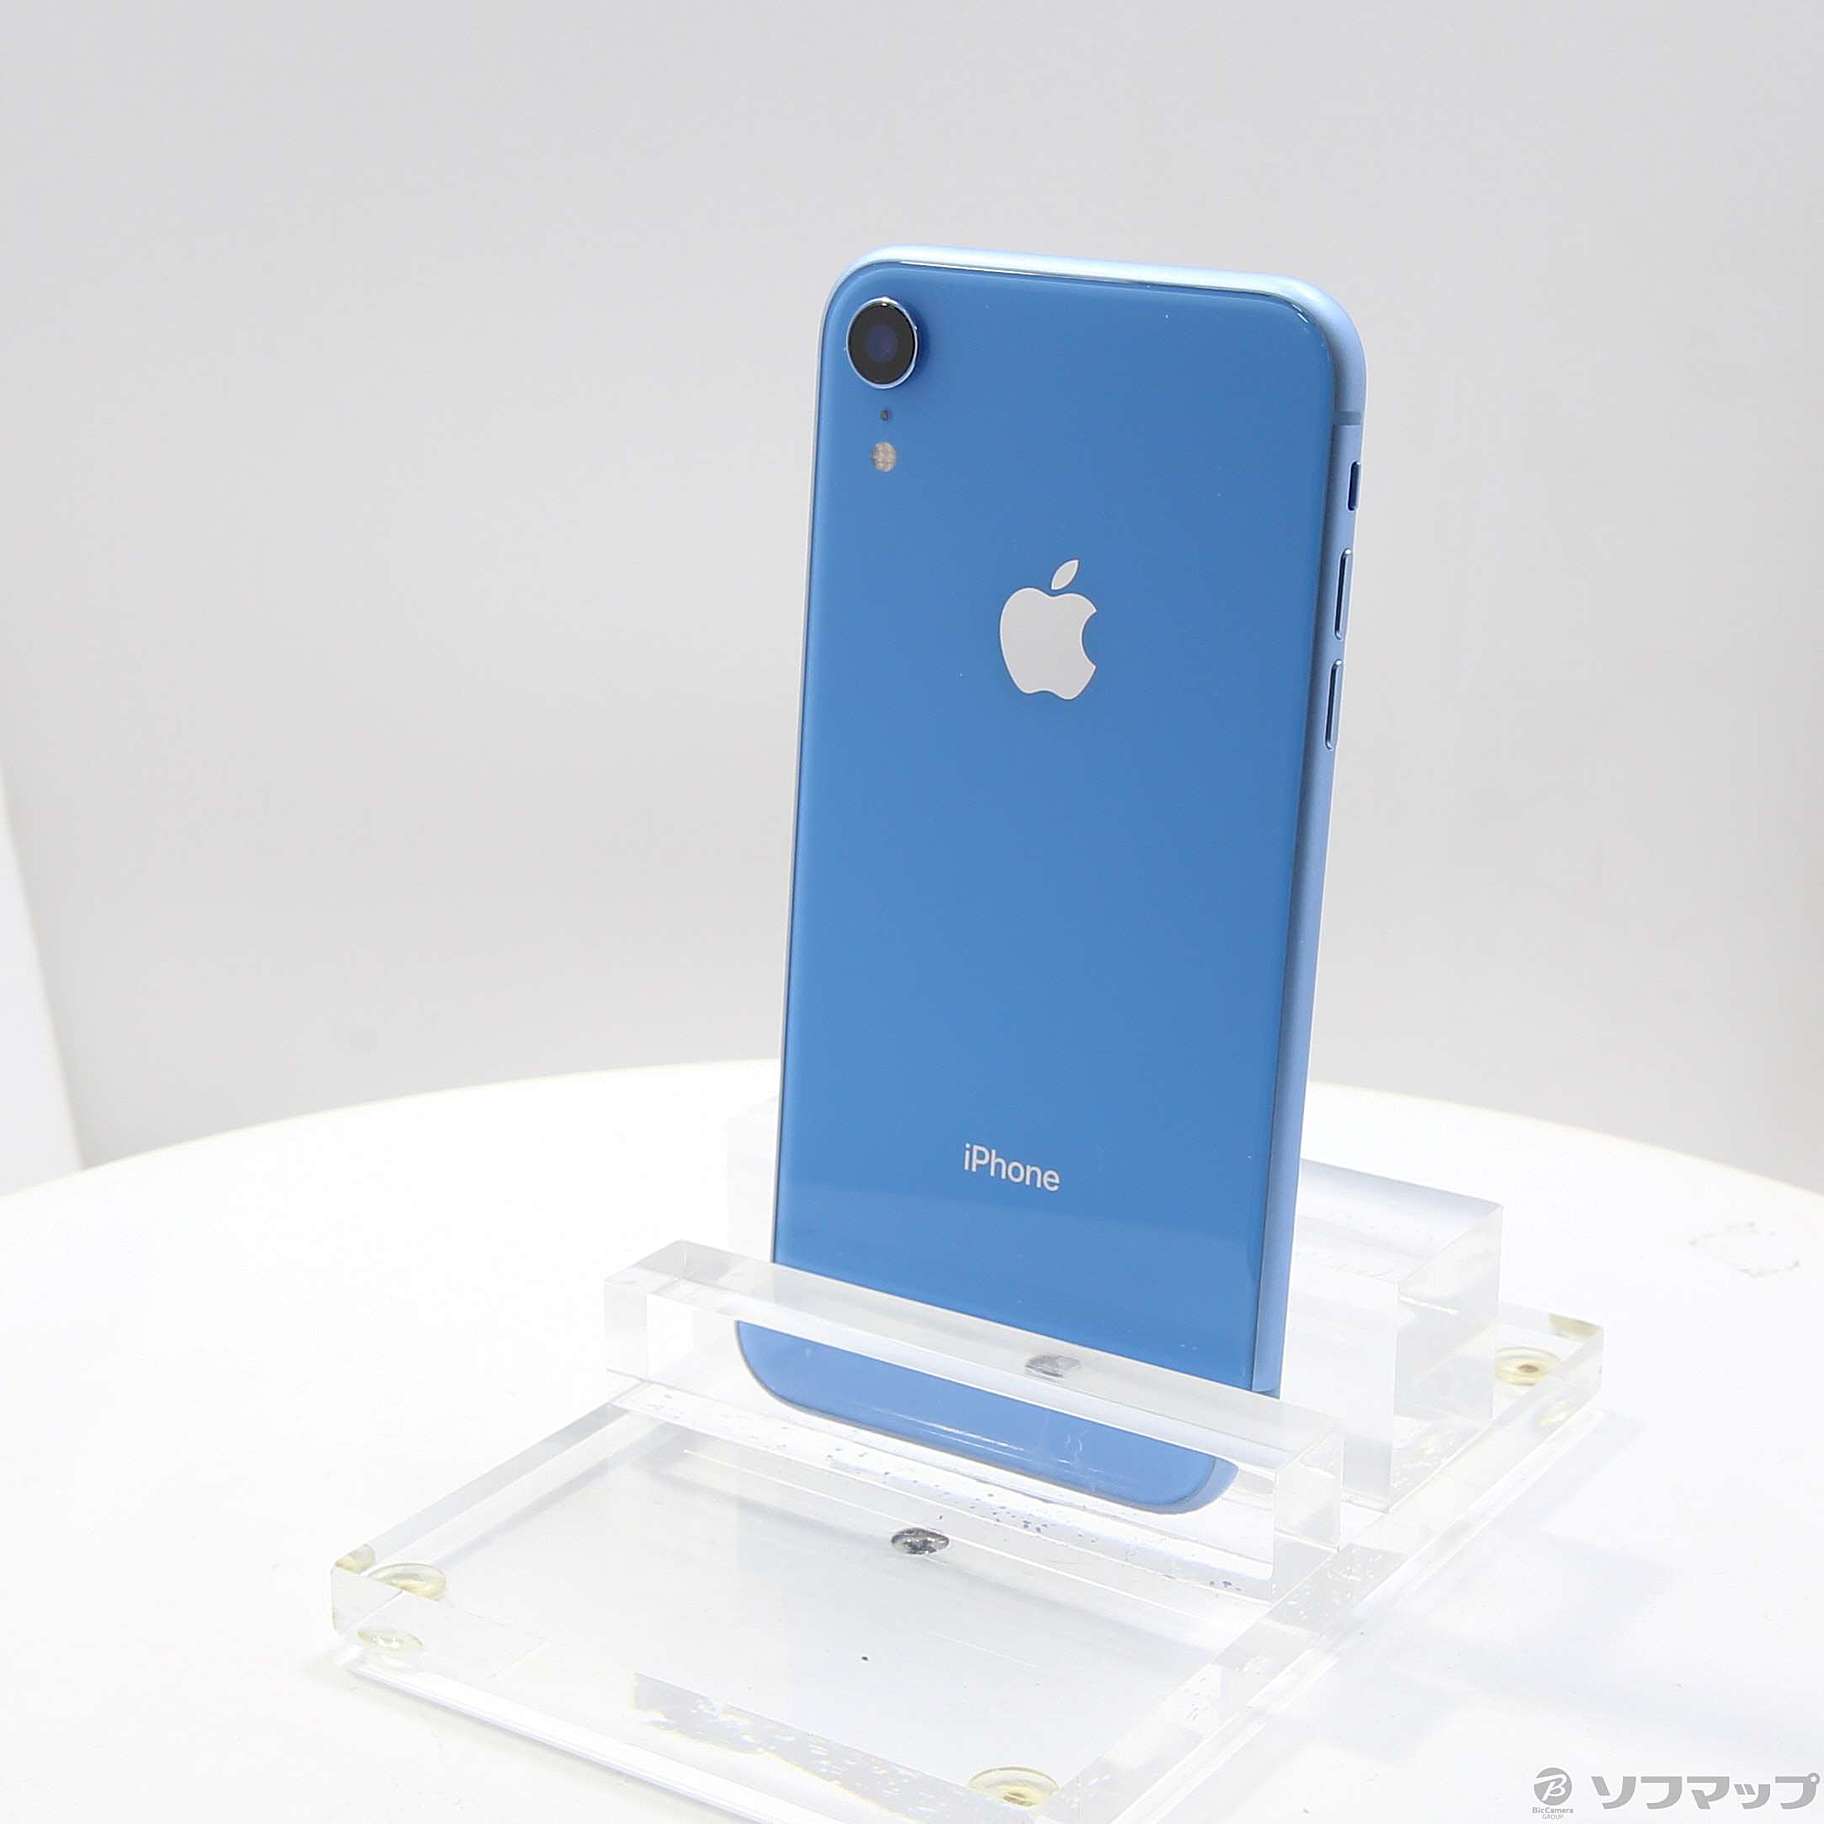 スマートフォン/携帯電話iPhonexr 64GB ブルー - スマートフォン本体